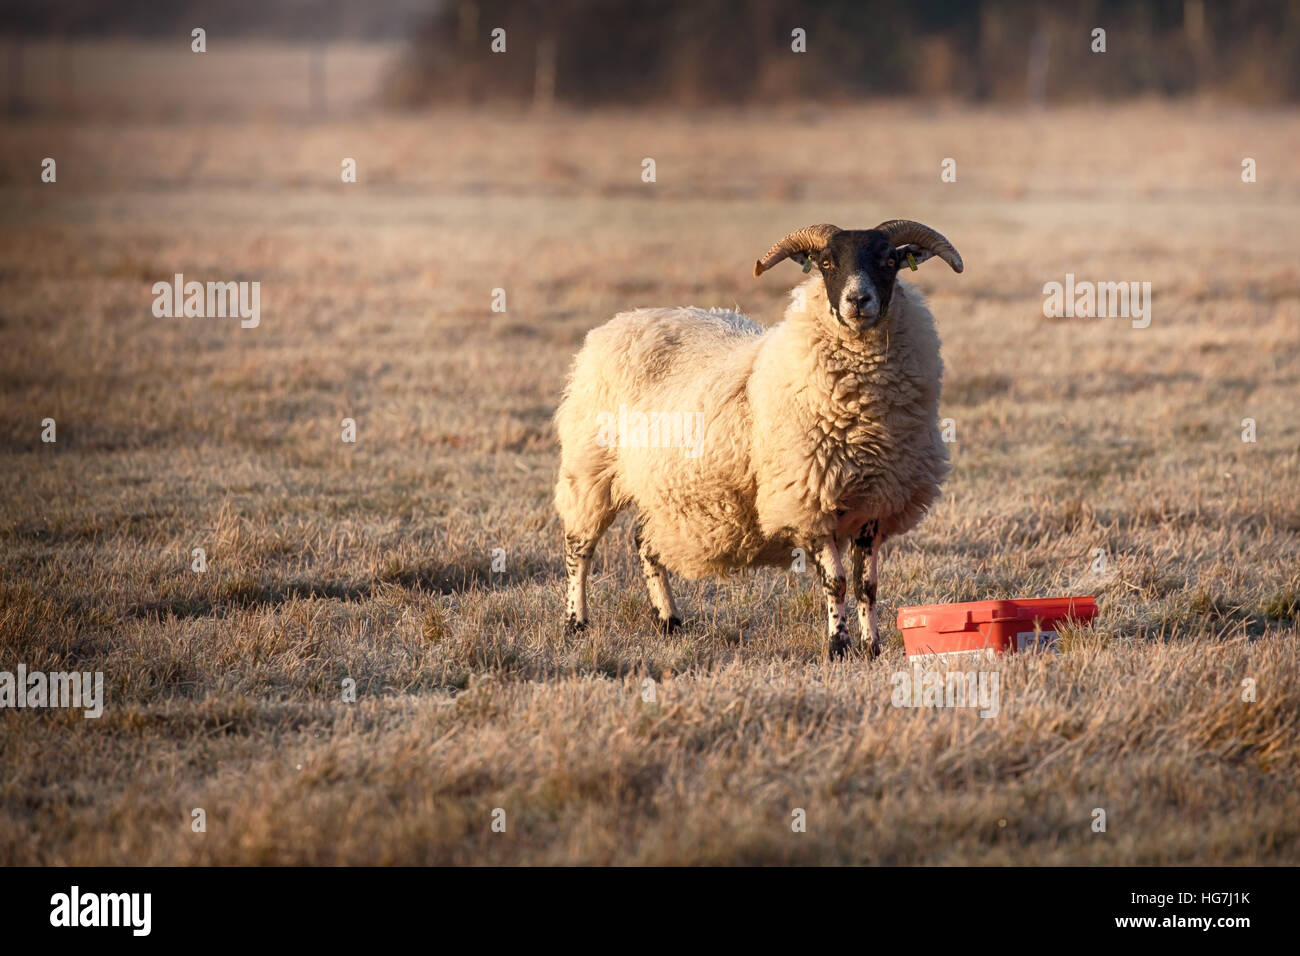 Norfolk Horn Schafe füttern an einem frostigen Morgen mit Sonnenlicht am frühen Morgen. Schafe, starrte auf die Kamera mit großen Hörnern und einem voll wolliges Fell Stockfoto